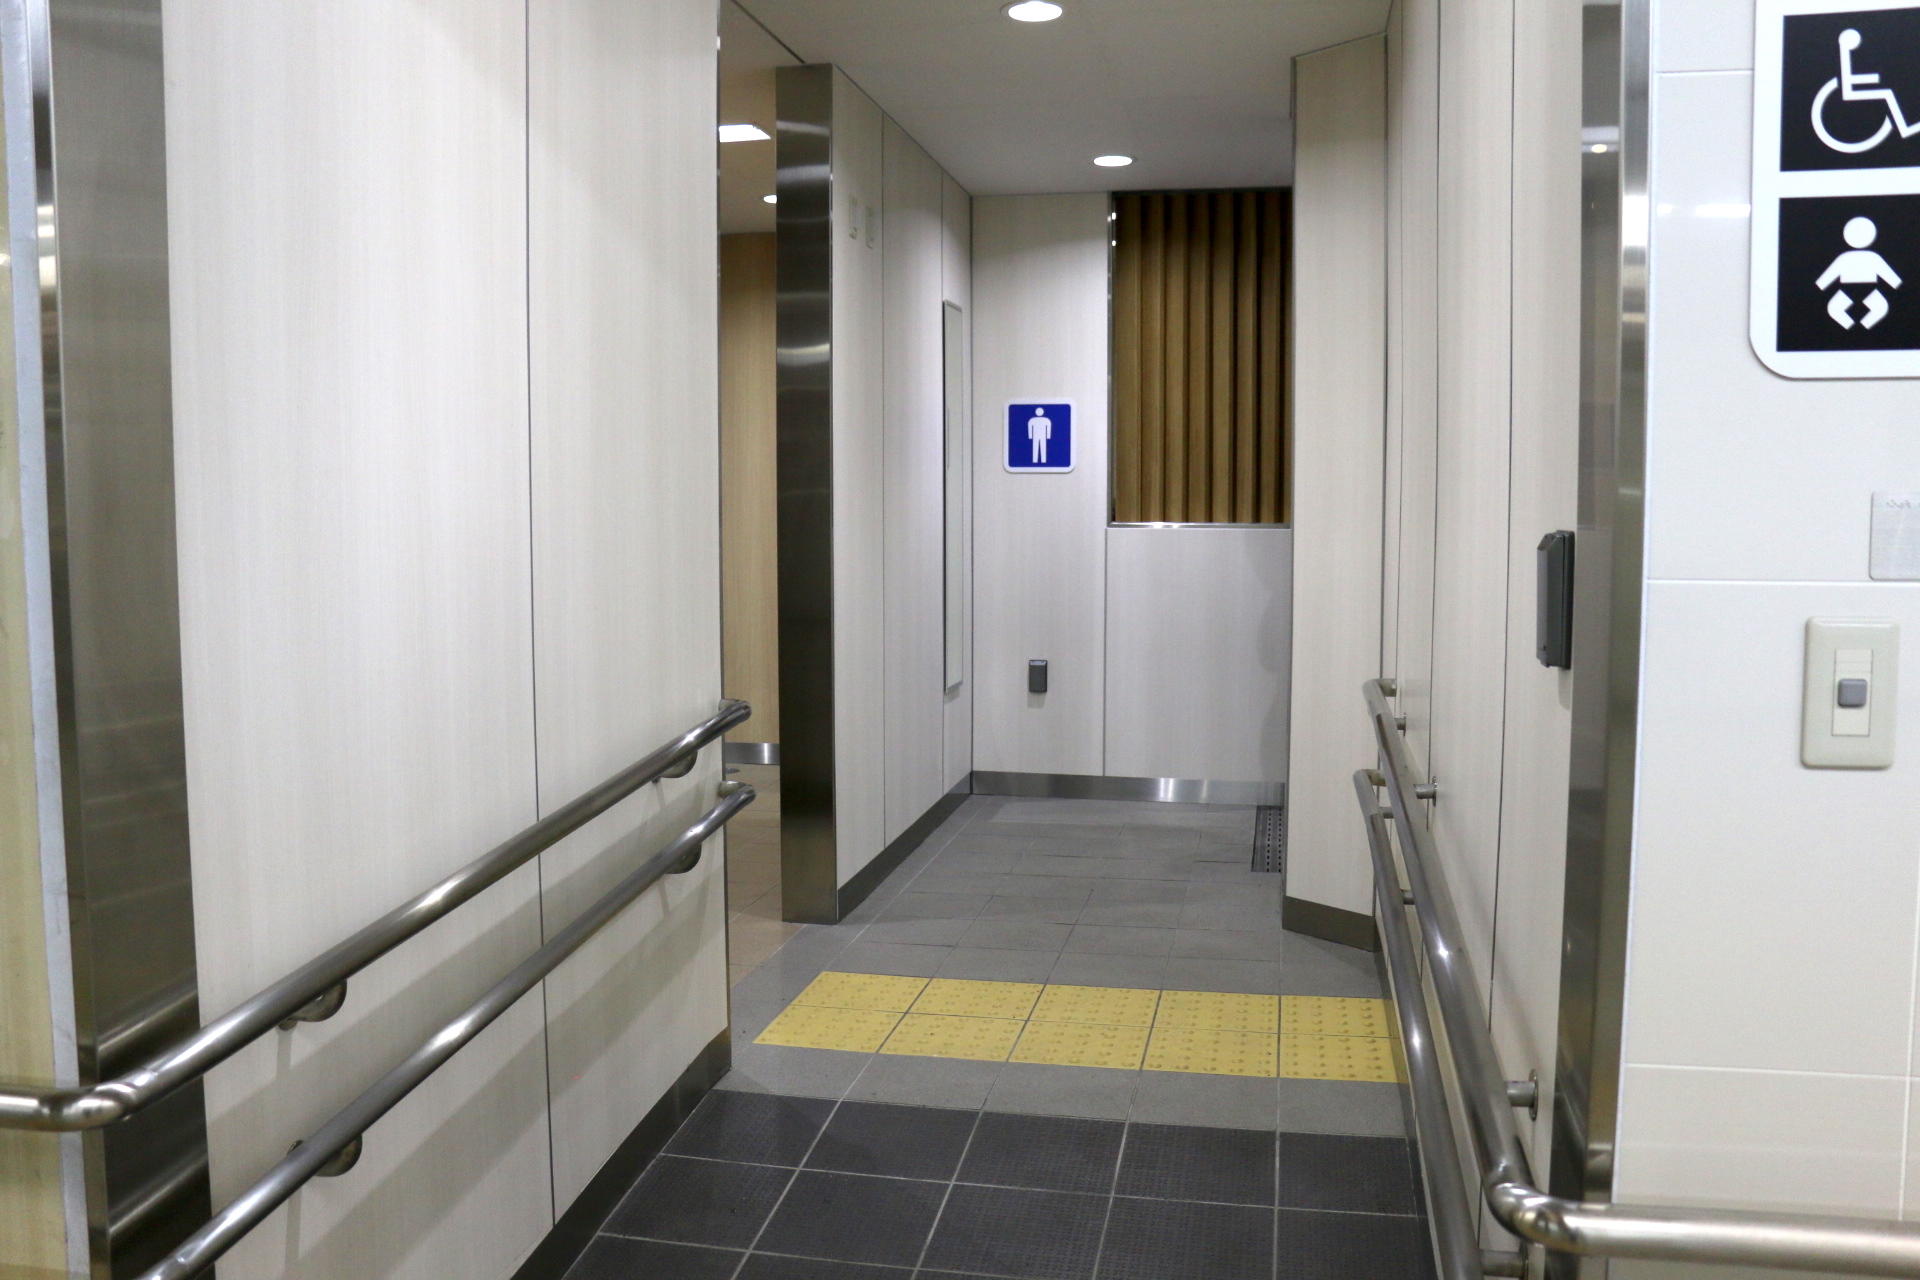 【地下浪漫の旅】何でも水に流せるわけじゃない！「地下鉄のトイレ」の生き様がかっこいい イメージ